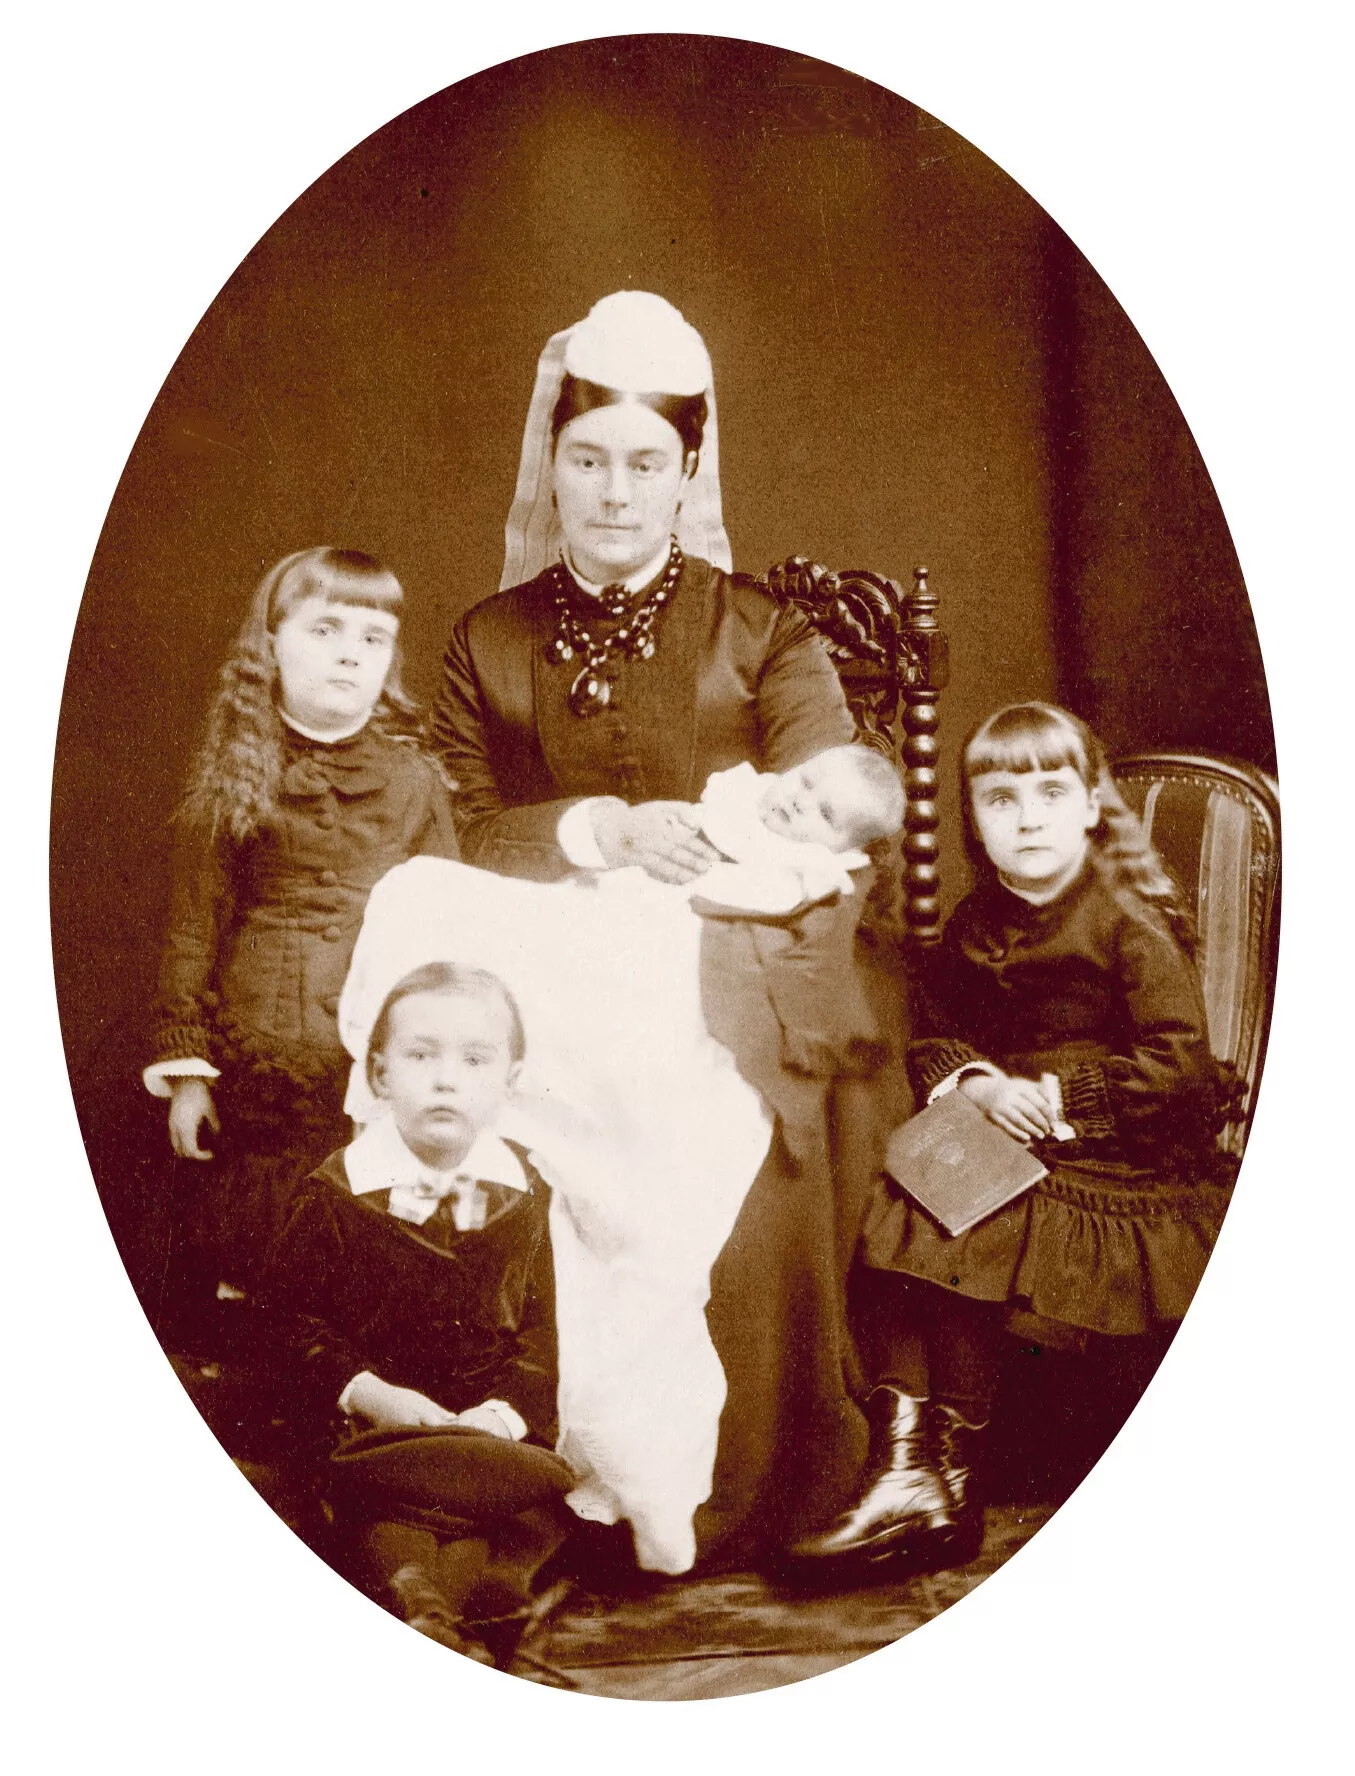 Vasta leskeytynyt Constance Borgström lapsineen vuonna 1876. Perheen kuopus, Aline, syntyi kolme kuukautta isänsä kuoleman jälkeen.